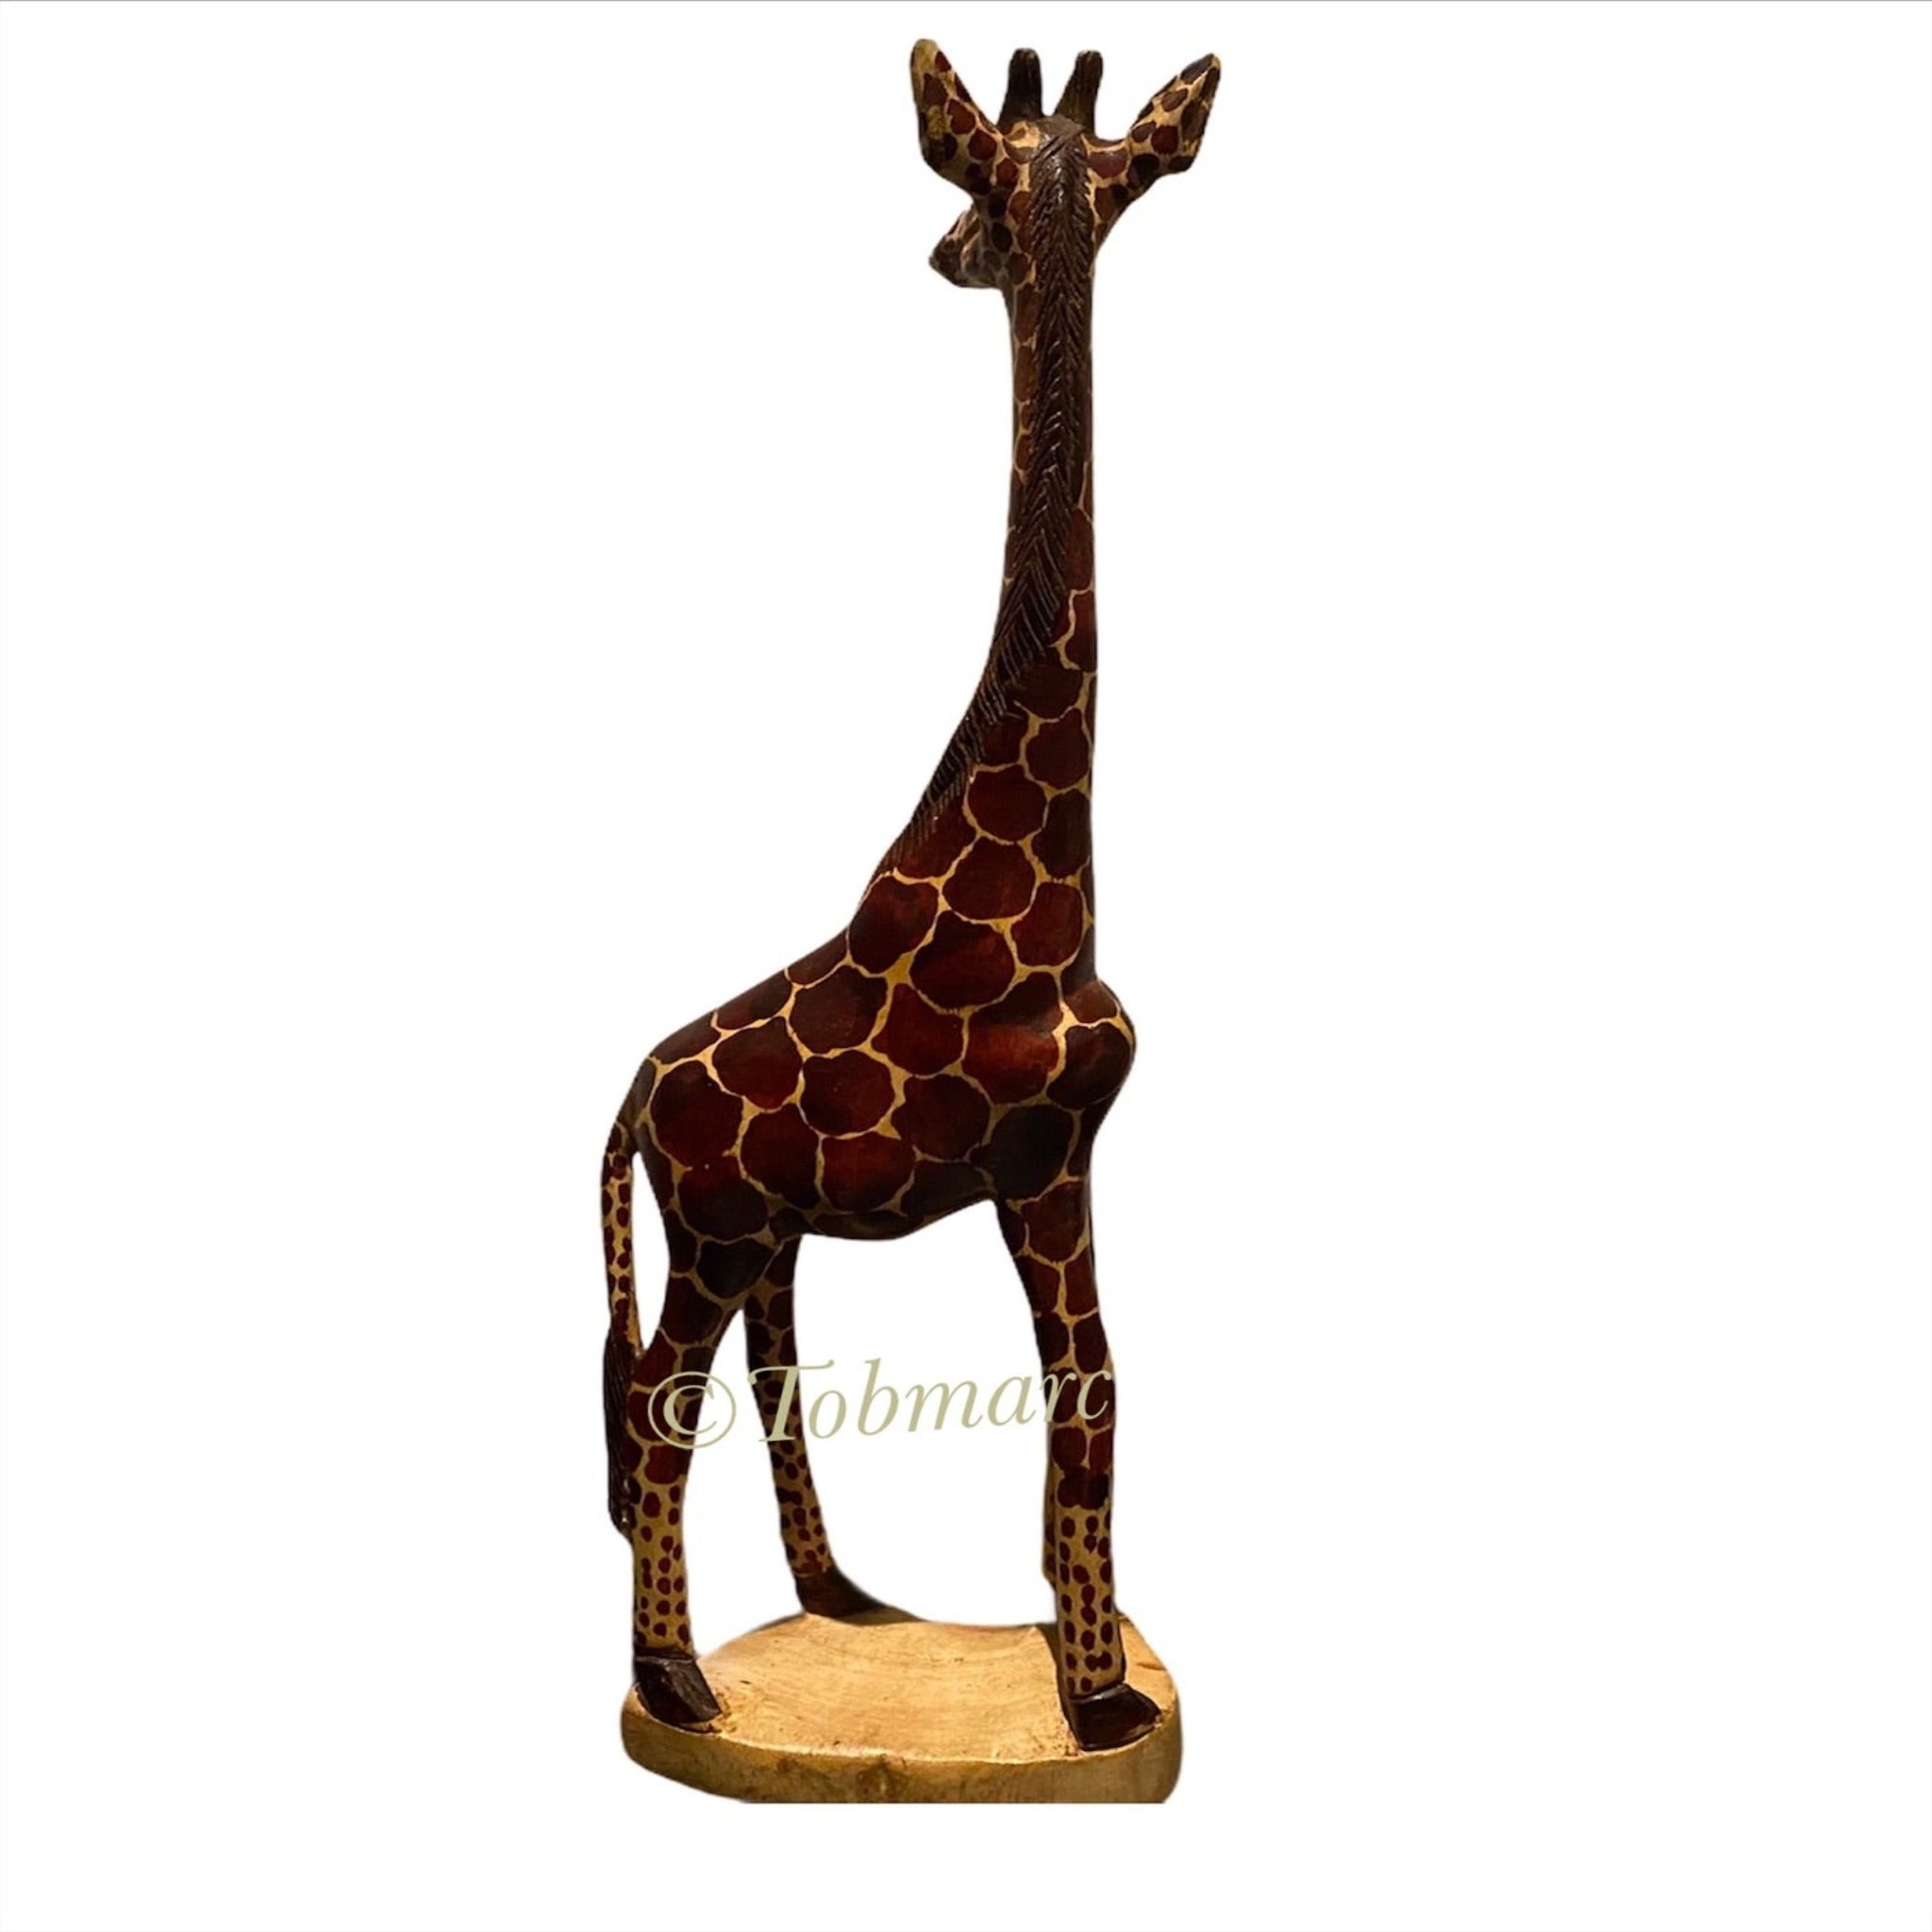 18” Wooden Giraffe sculpture, African Handcrafted Giraffe, decor - Tobmarc Home Decor & Gifts 